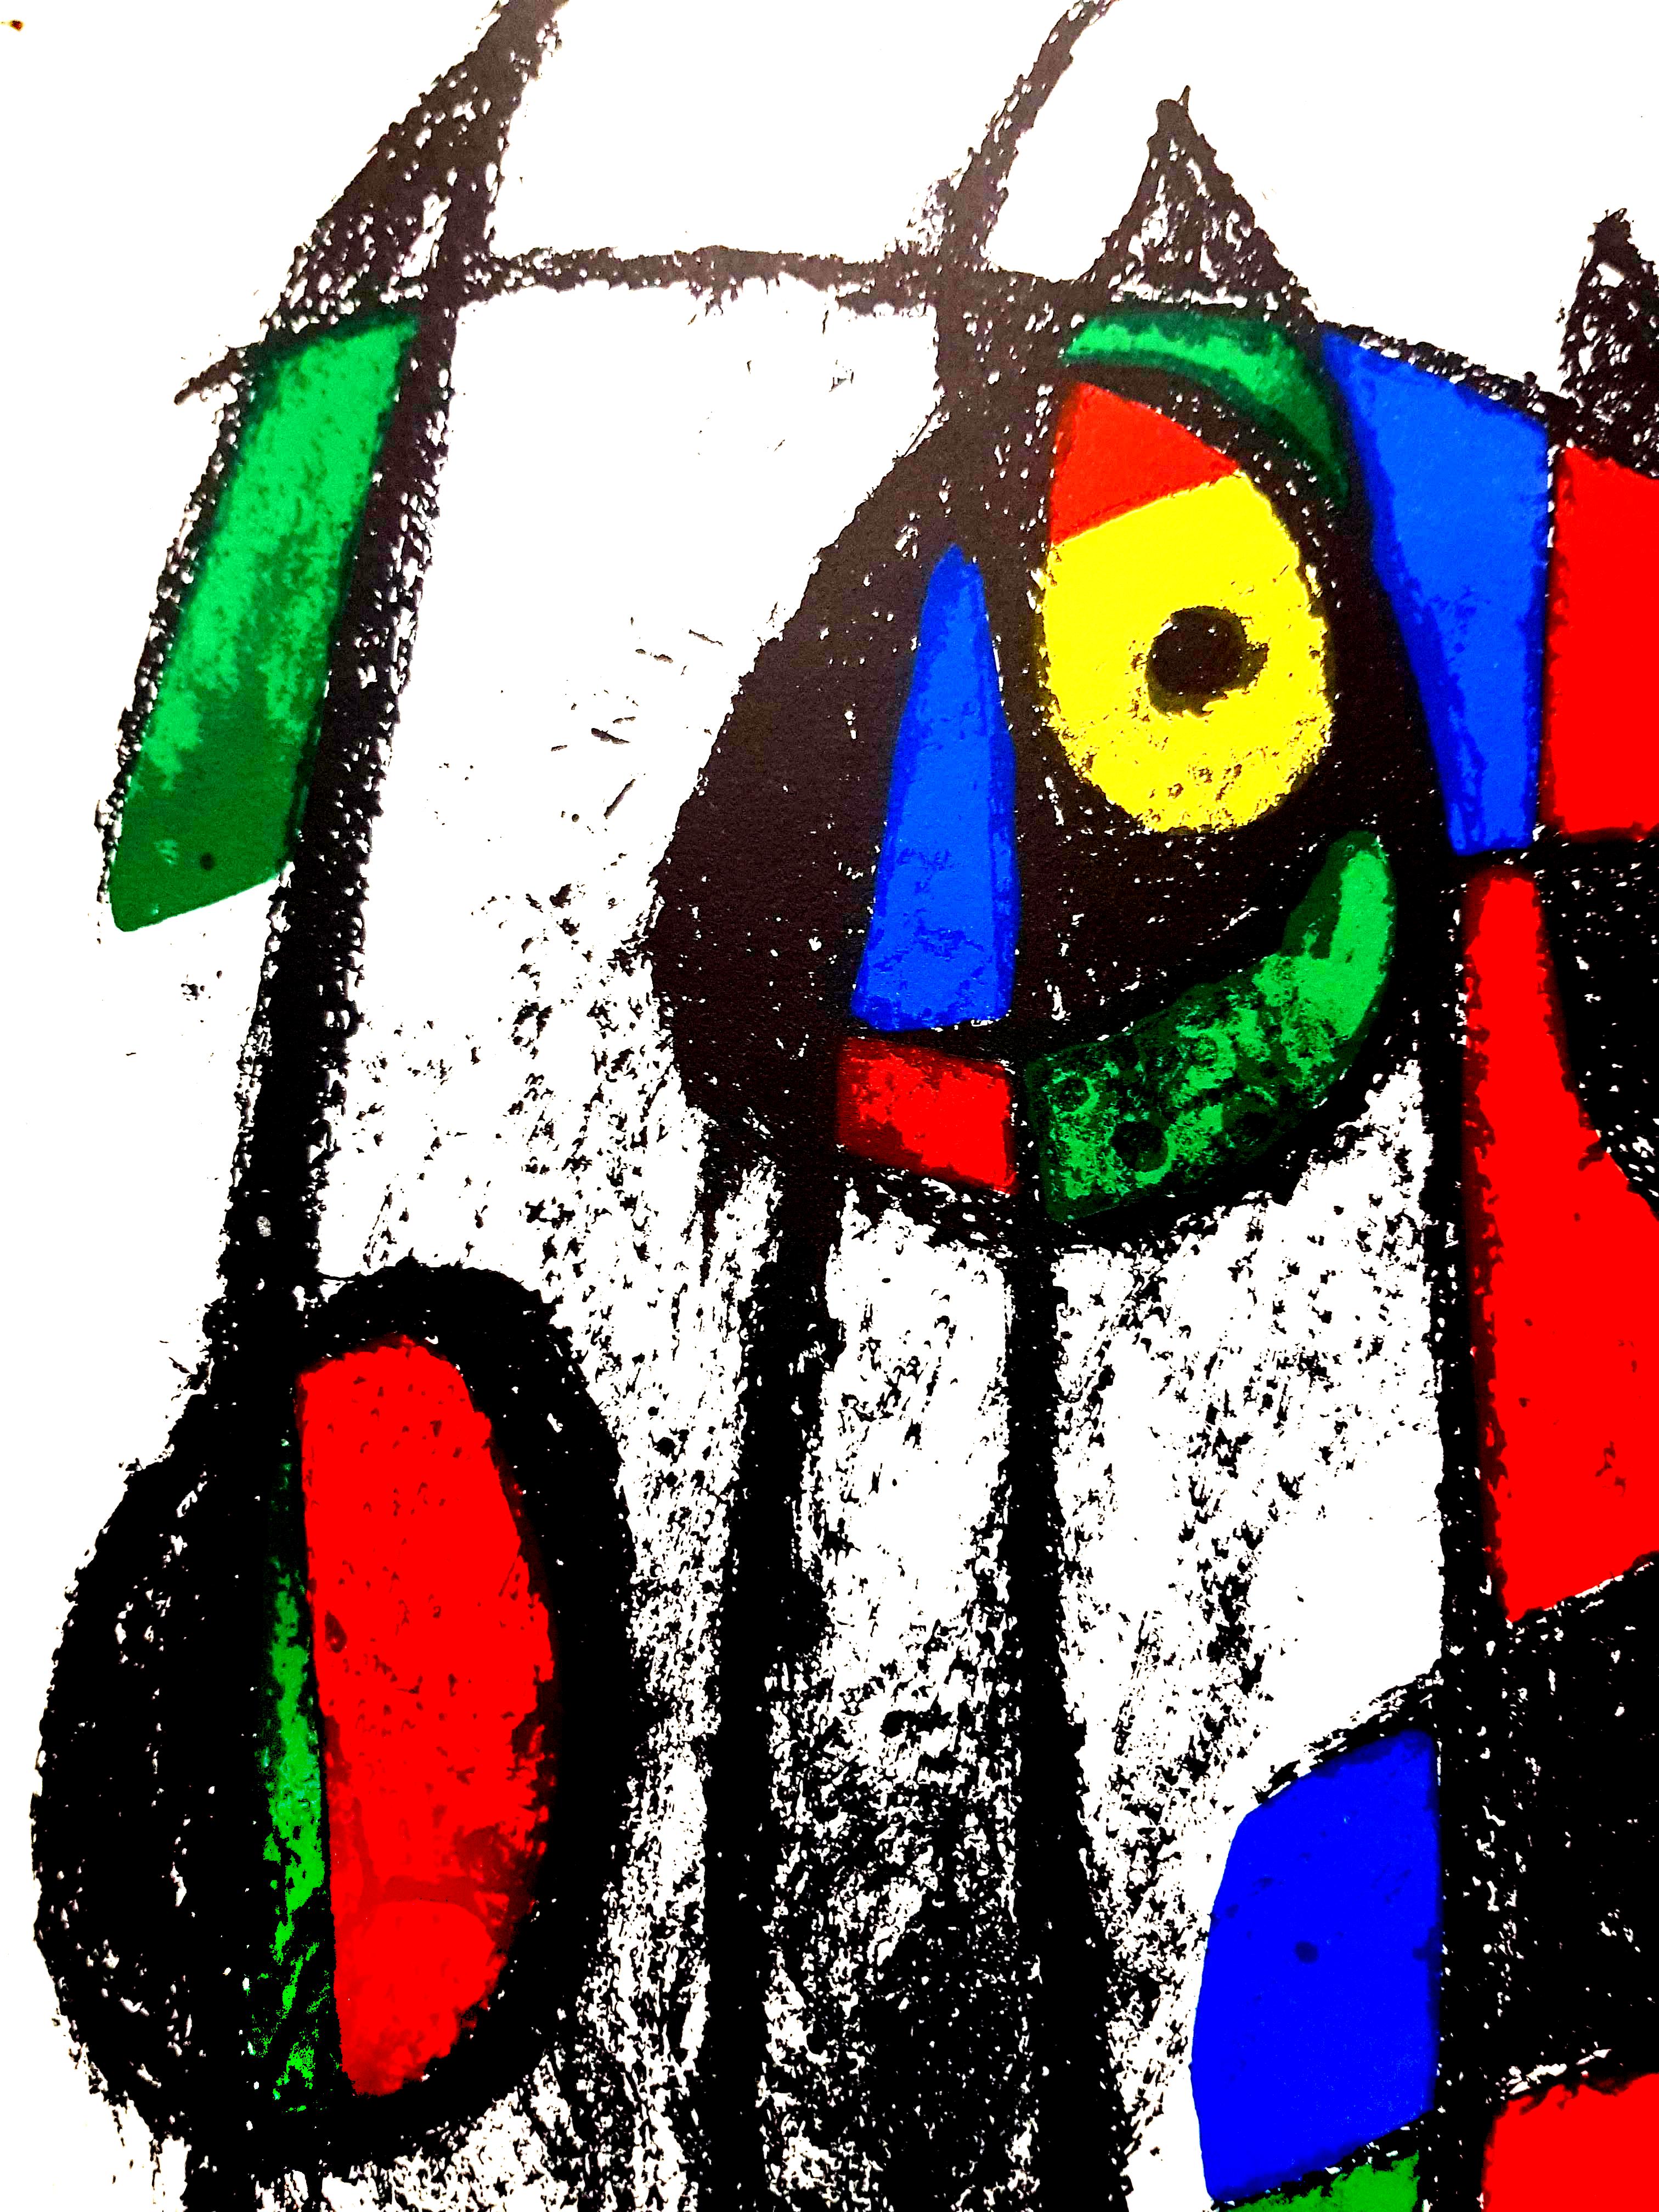 Joan Miro Miro Original Abstrakte Lithographie
Künstler: Joan Miro
Medium: Original-Lithographie auf Rives-Vellum
Mappe: Miro Lithographe II
Jahr: 1975
Auflage: 5,000
Bildgröße: 10